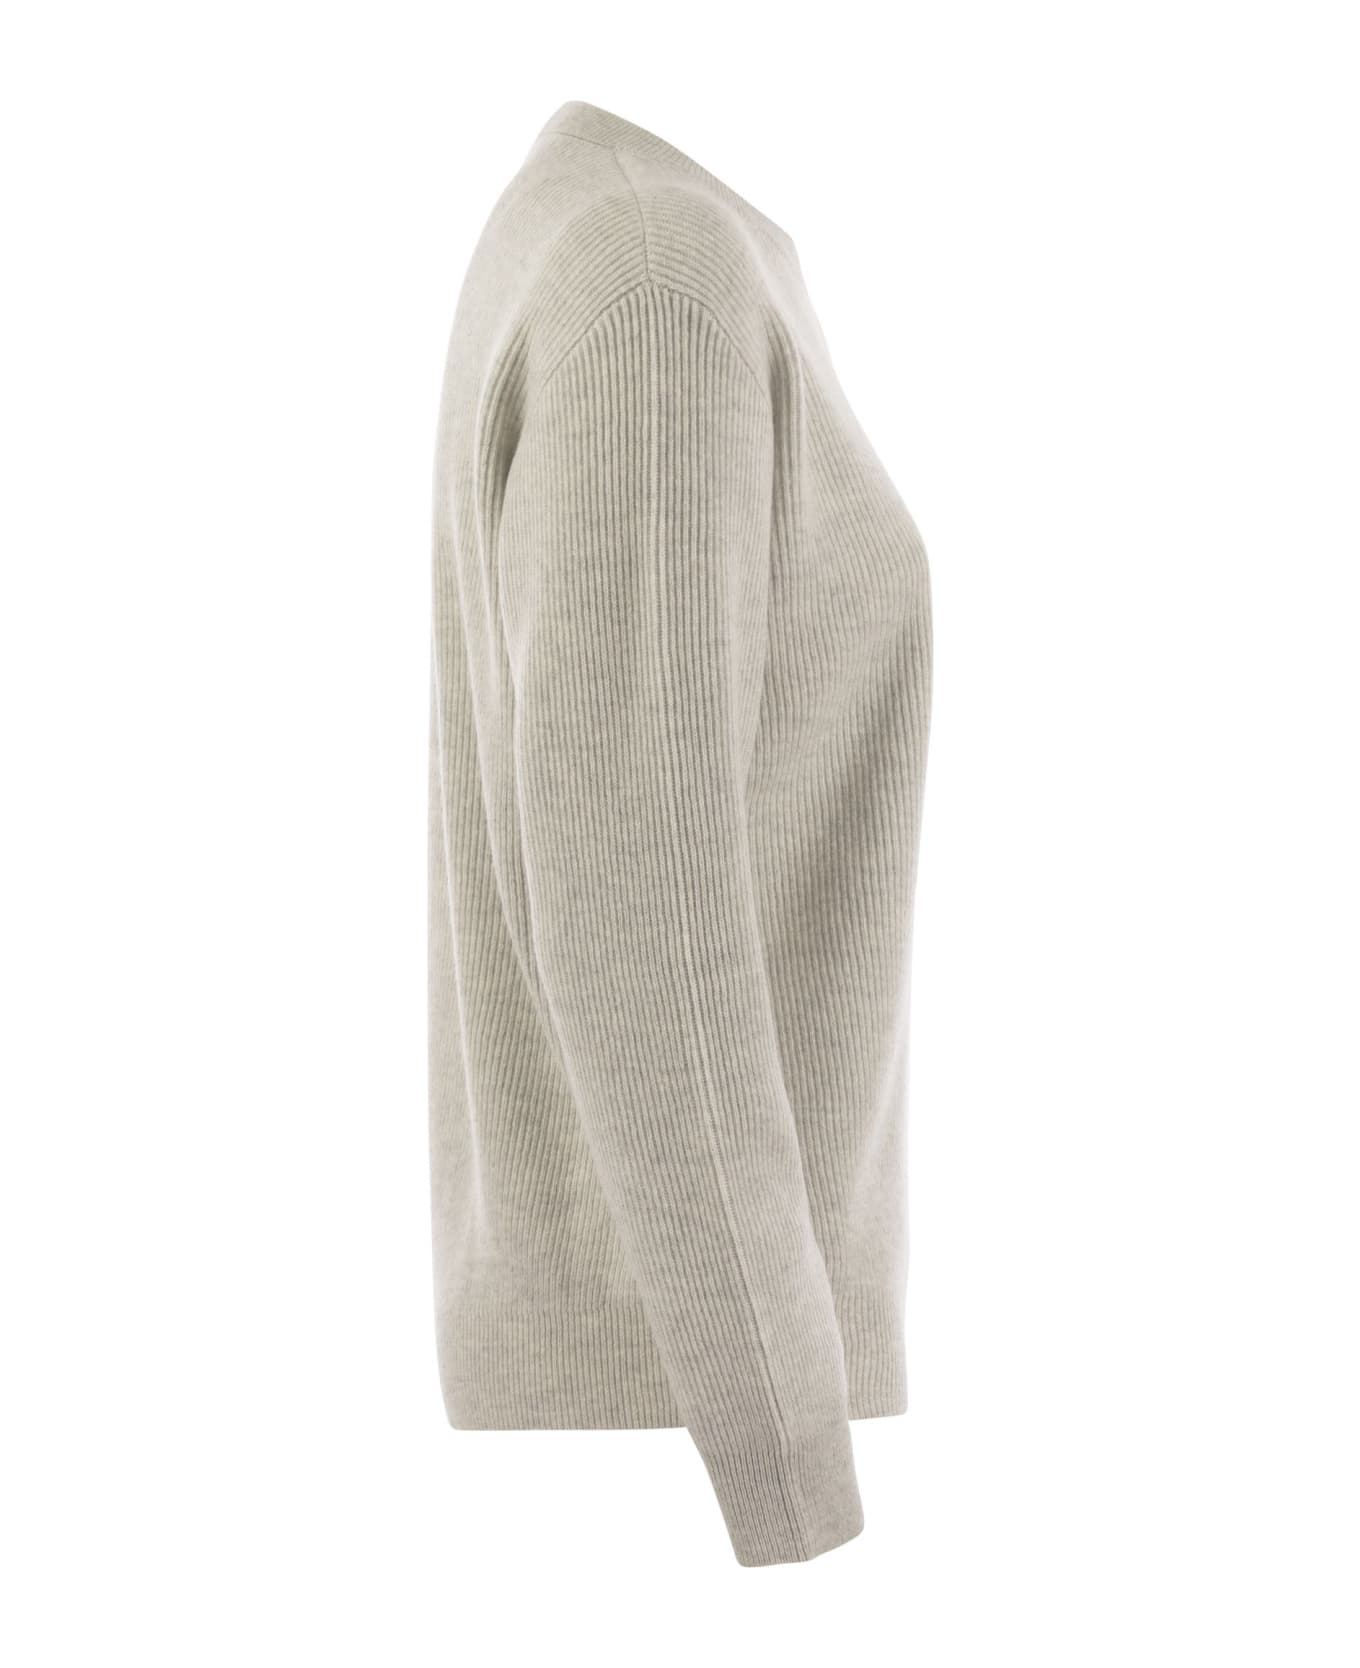 Brunello Cucinelli English Rib Cashmere Sweater With Monile - Fog